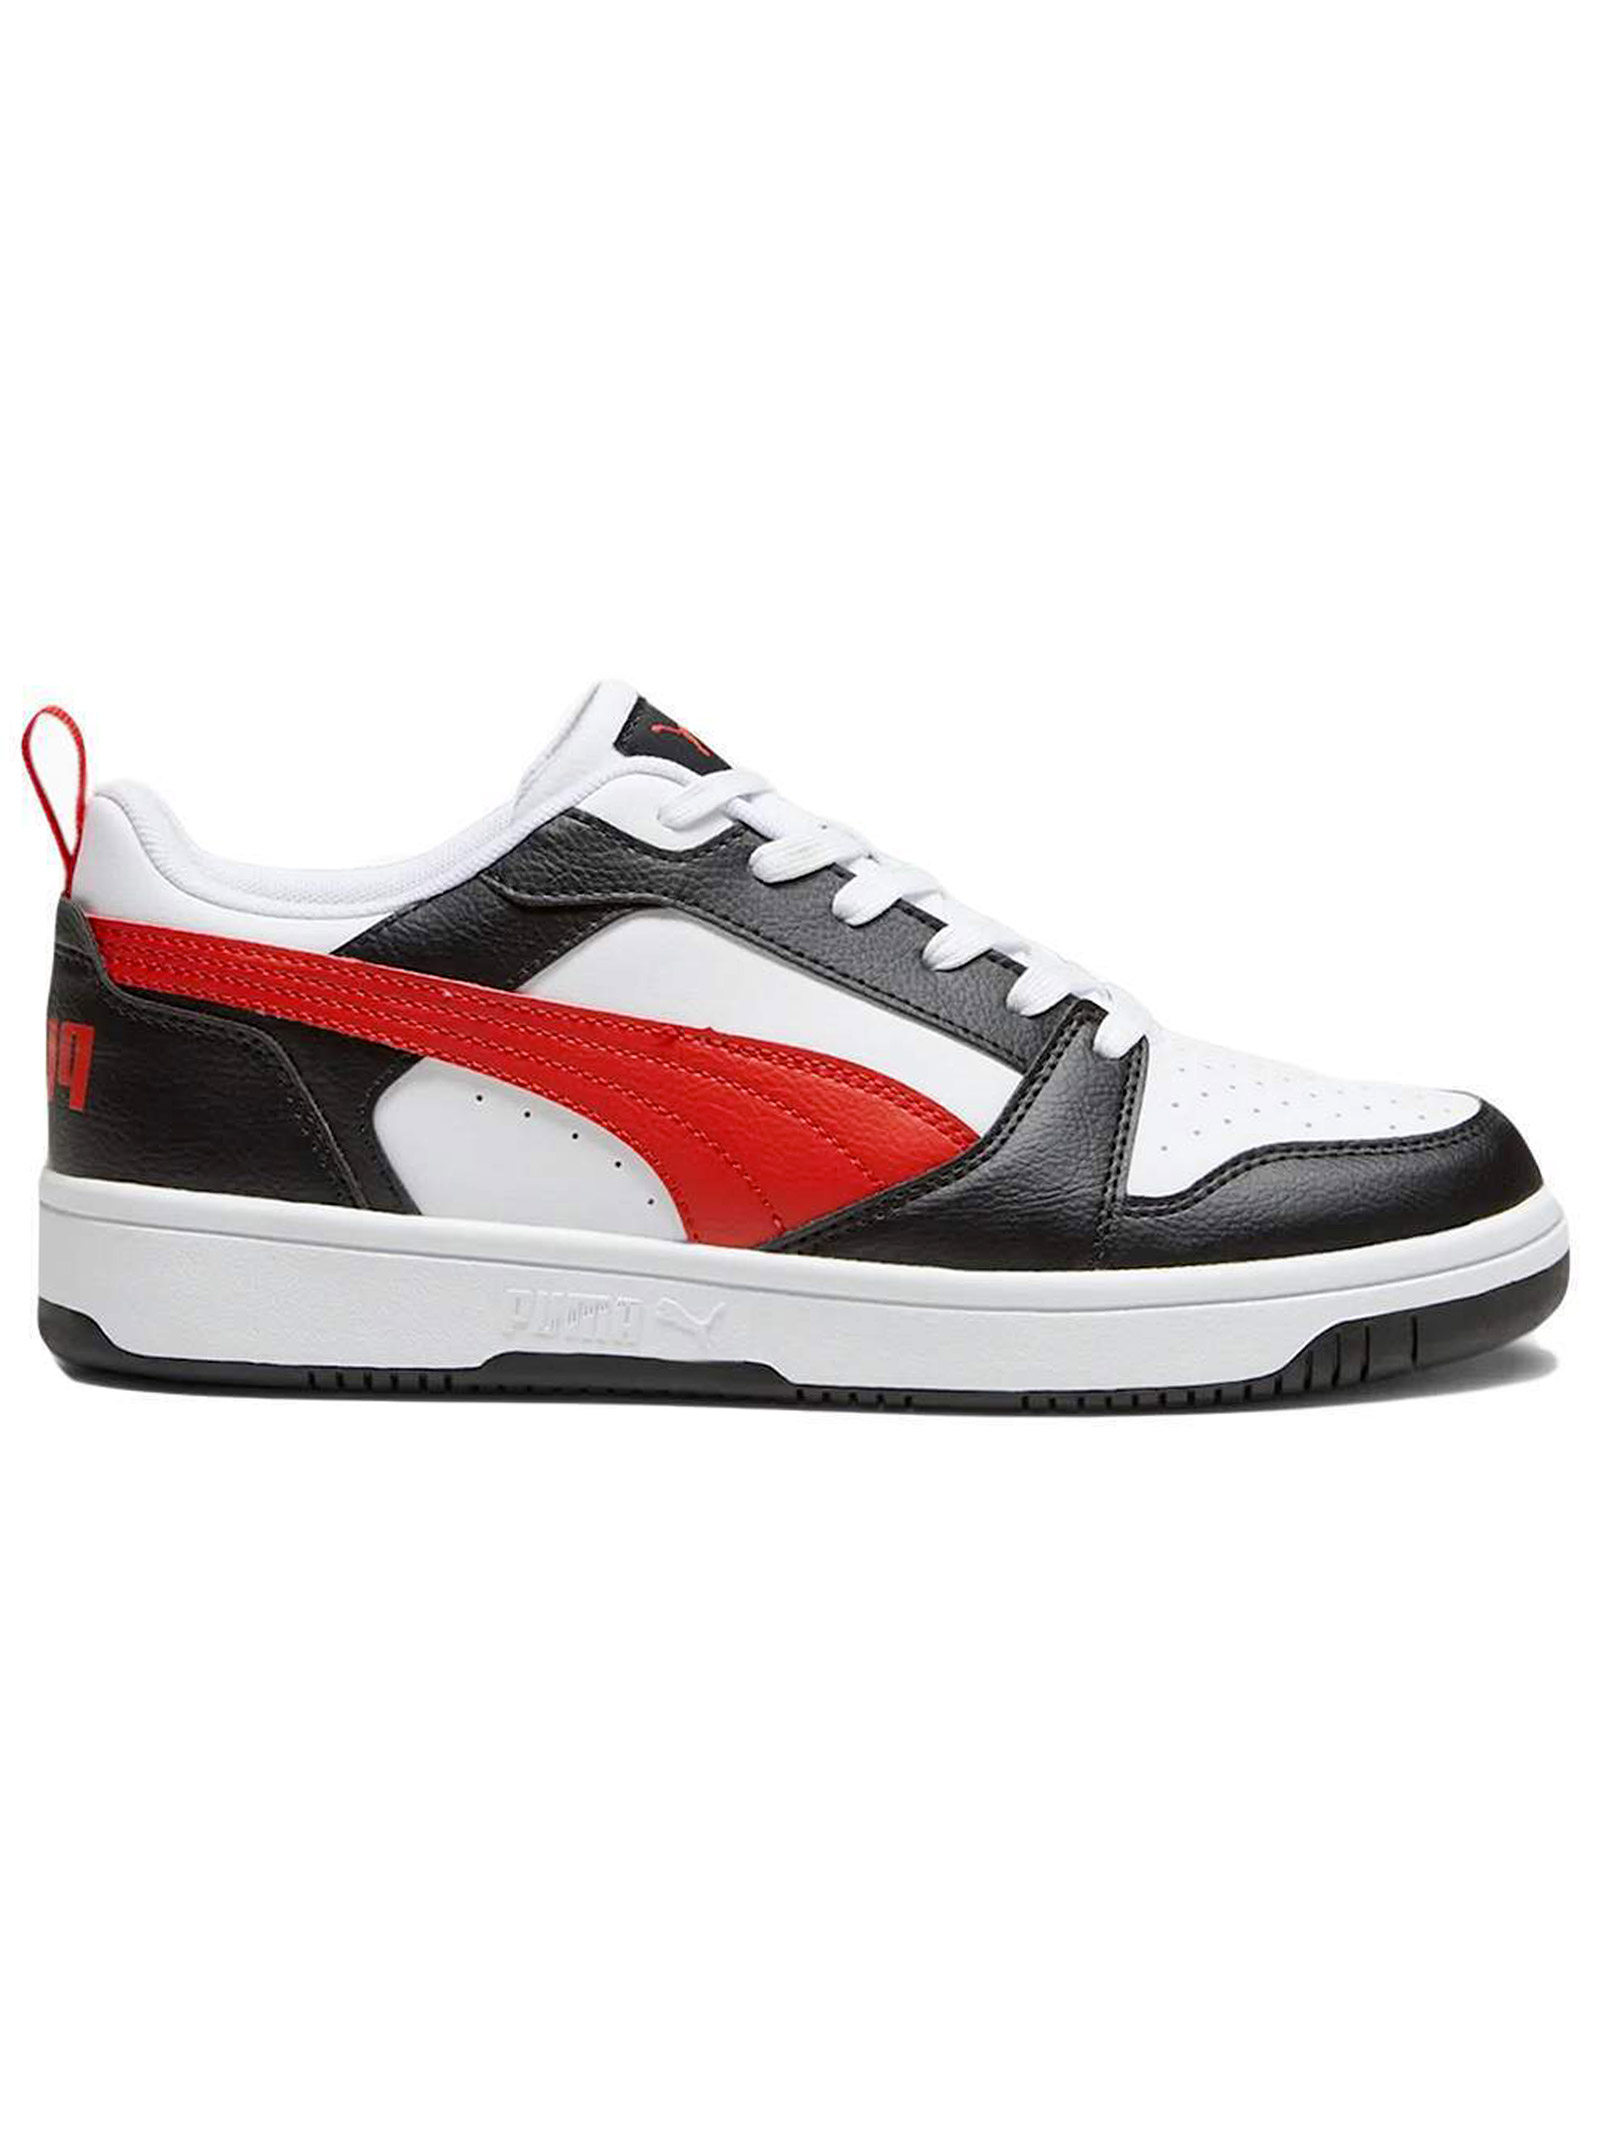 Мужские кроссовки Puma Rebound V6 Low, белый/черный/красный мужские кроссовки rebound v6 puma белый